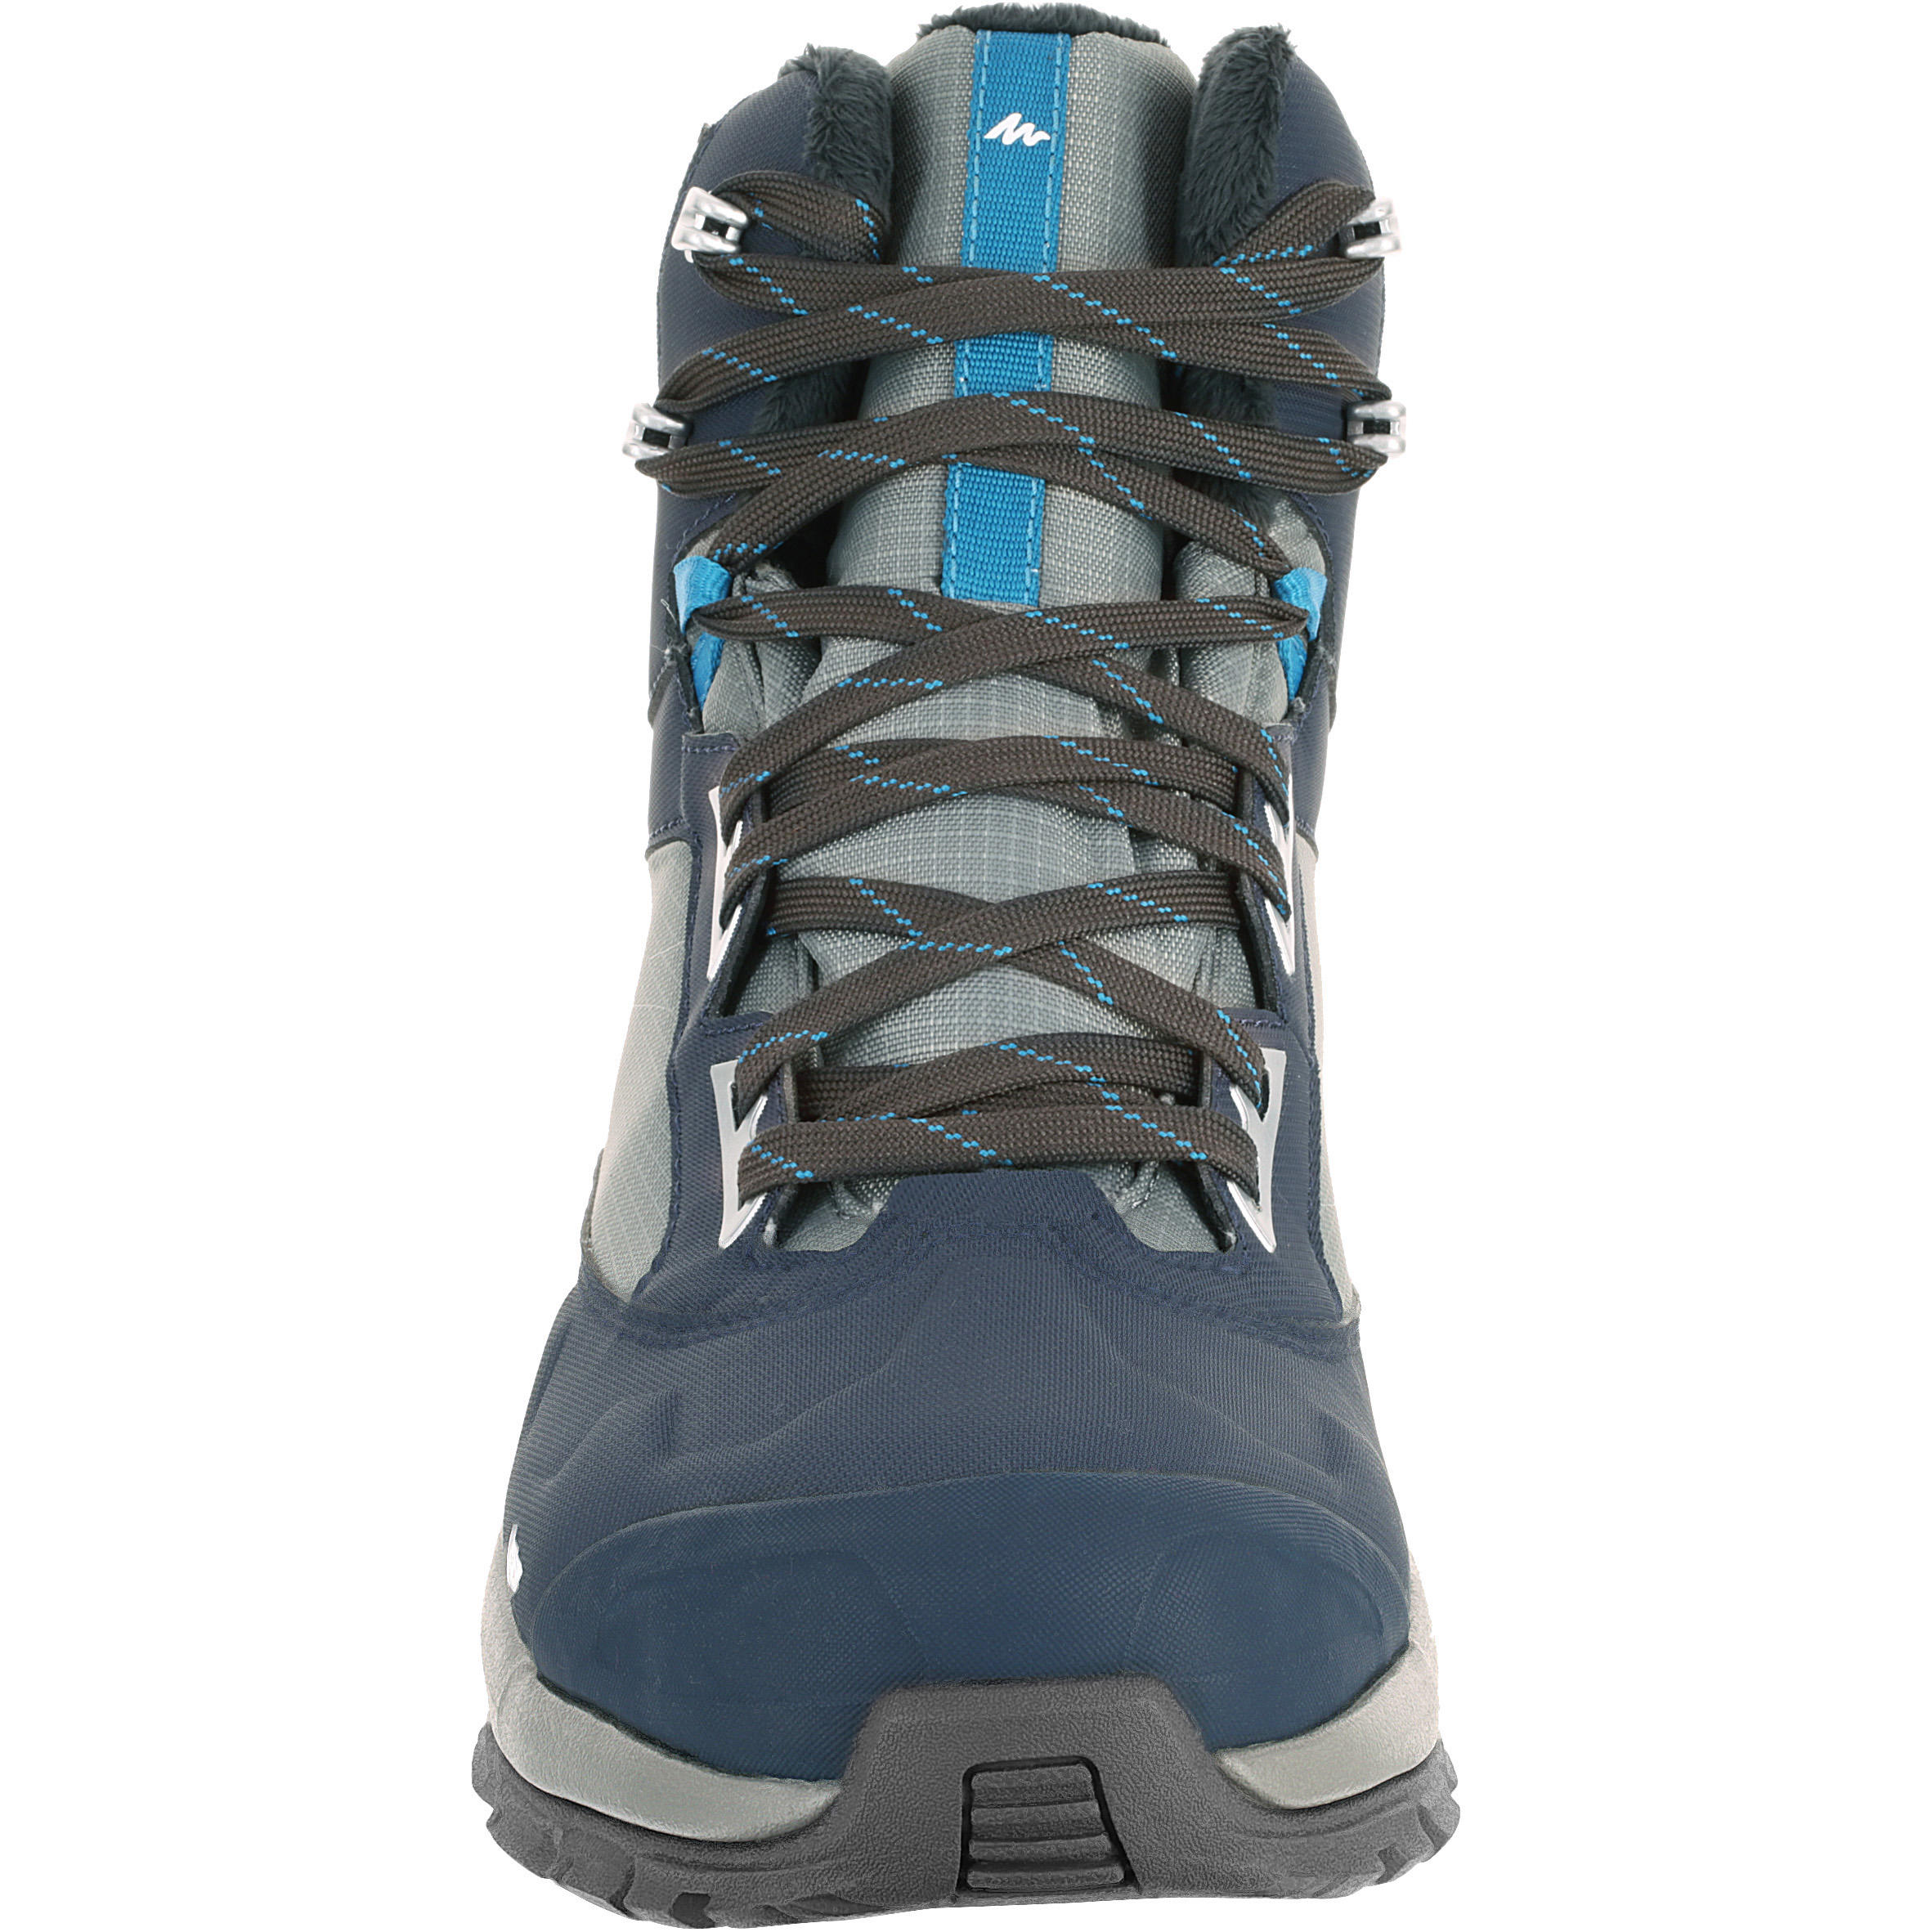 Forclaz 500 Warm Waterproof Men's Hiking Boots - Blue 5/15